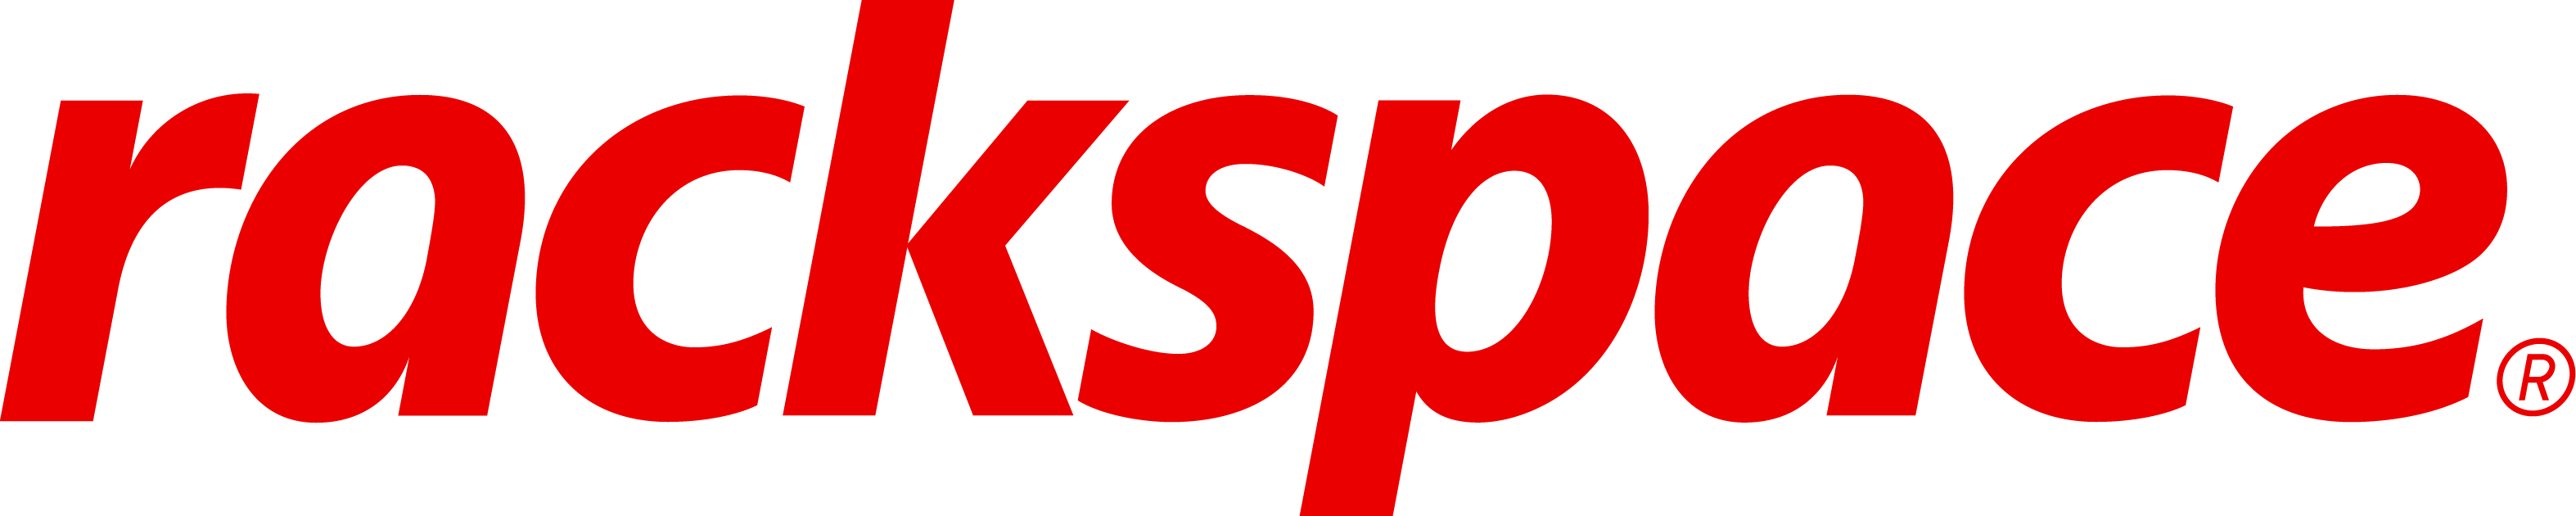 Rackspace Brand Logo